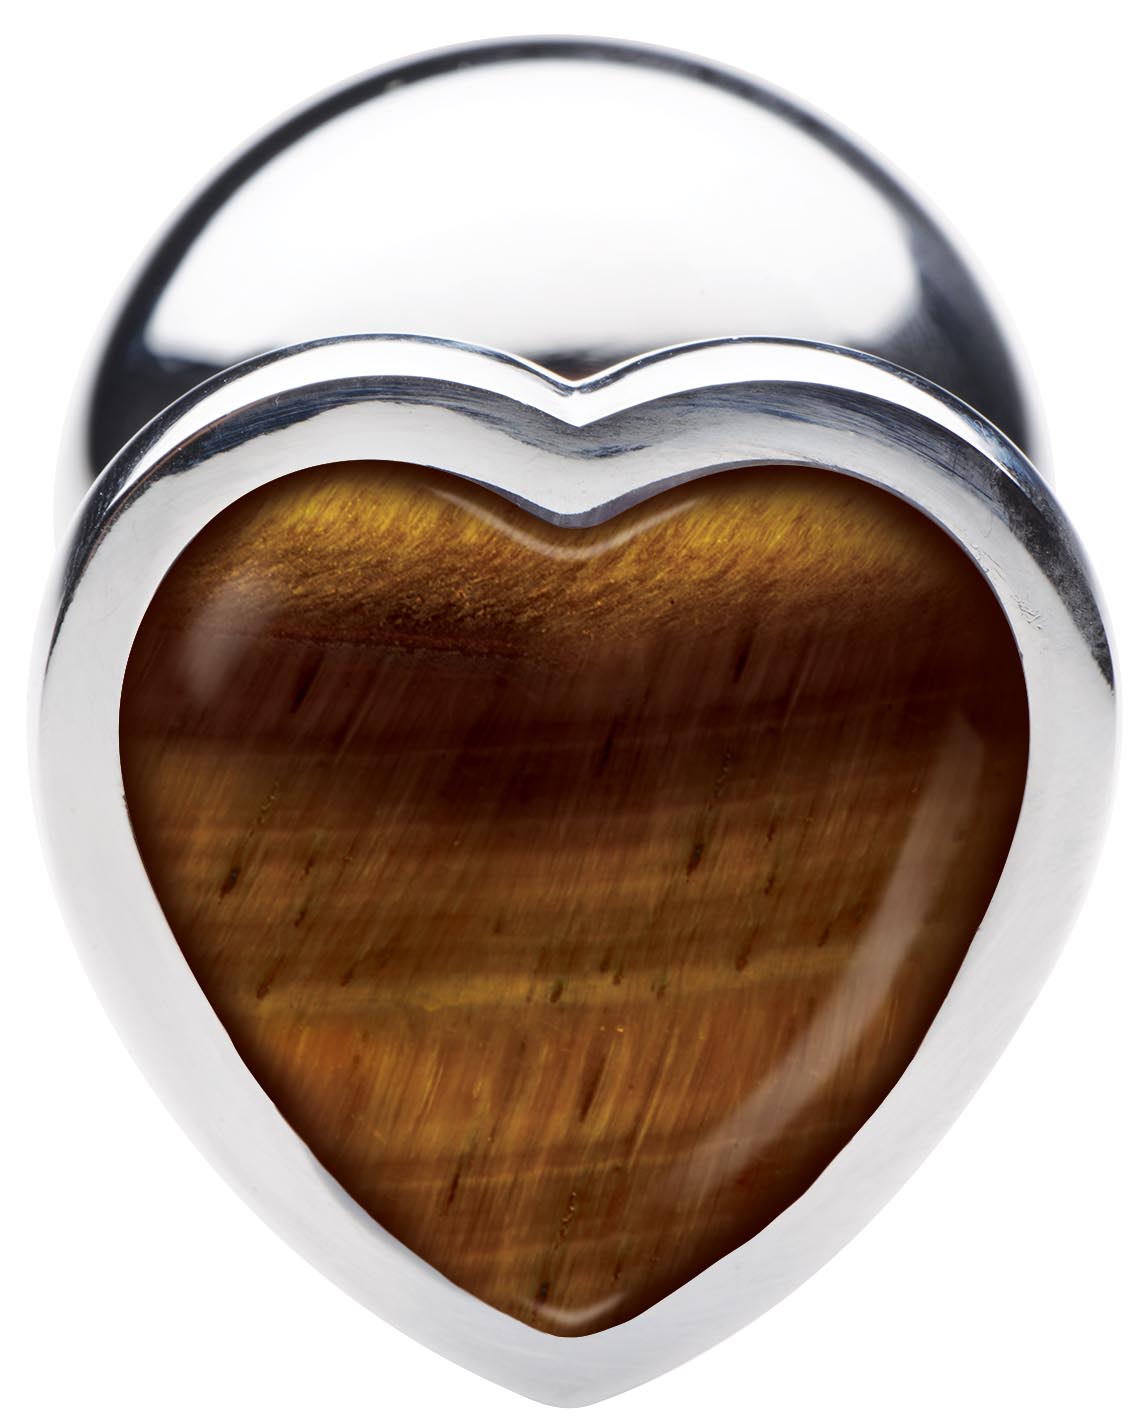 Authentic Tigers Eye Gemstone Heart Anal Plug - Large - UABDSM